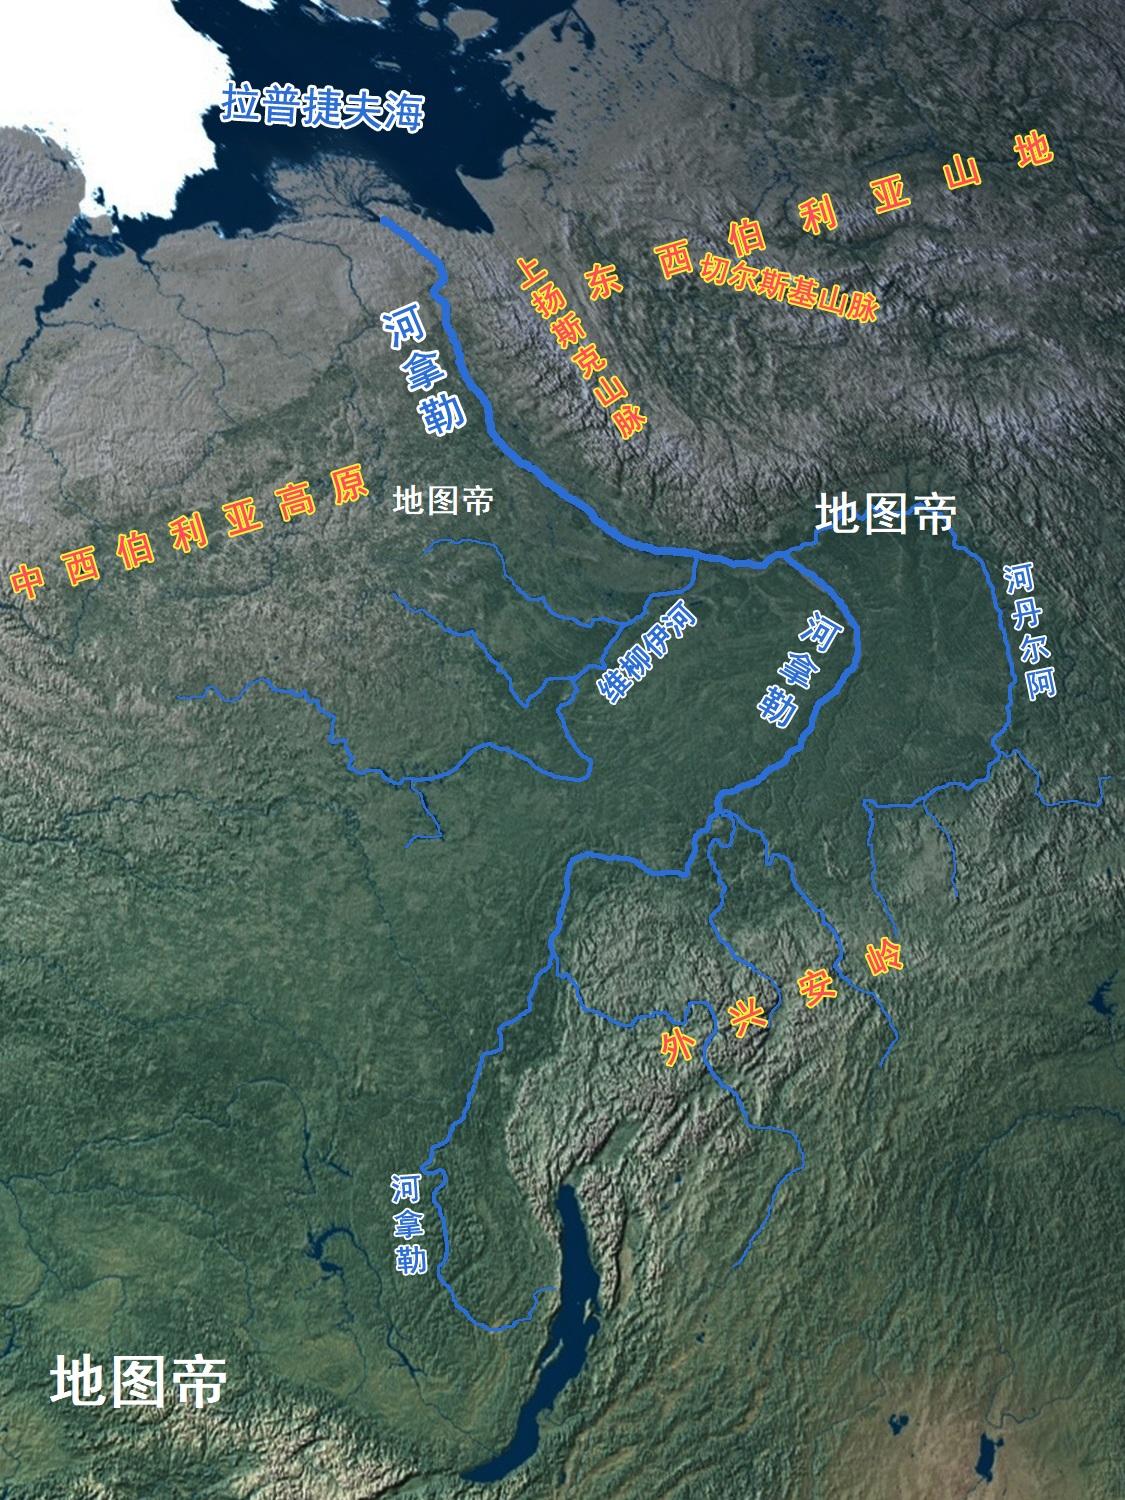 勒拿河是西伯利亚三大河东边的一条,流域范围主要在中西伯利亚高原与